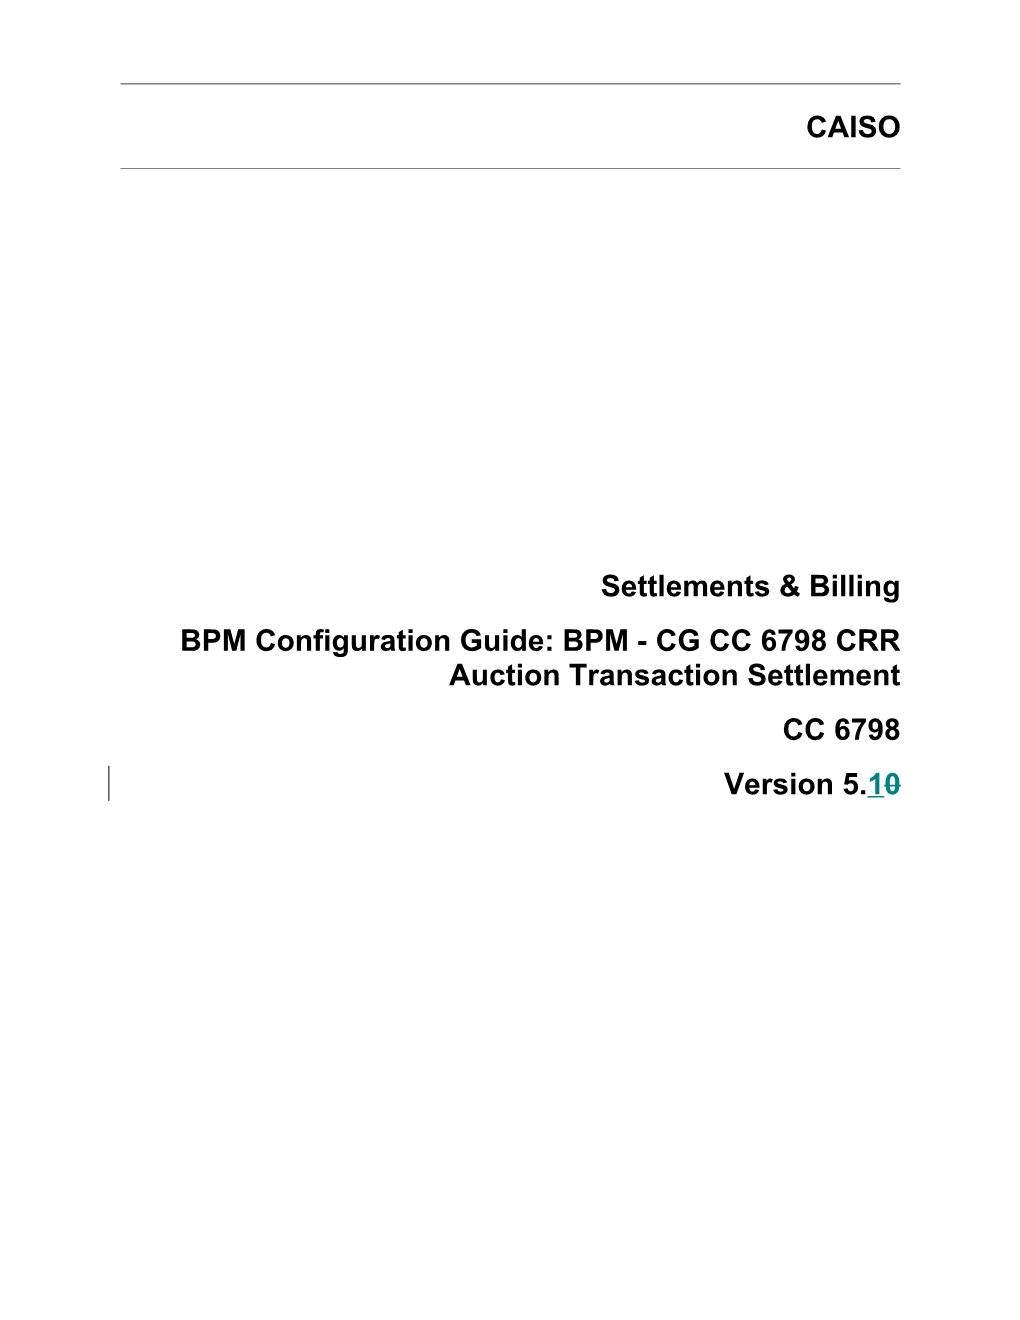 BPM - CG CC 6798 CRR Auction Transaction Settlement